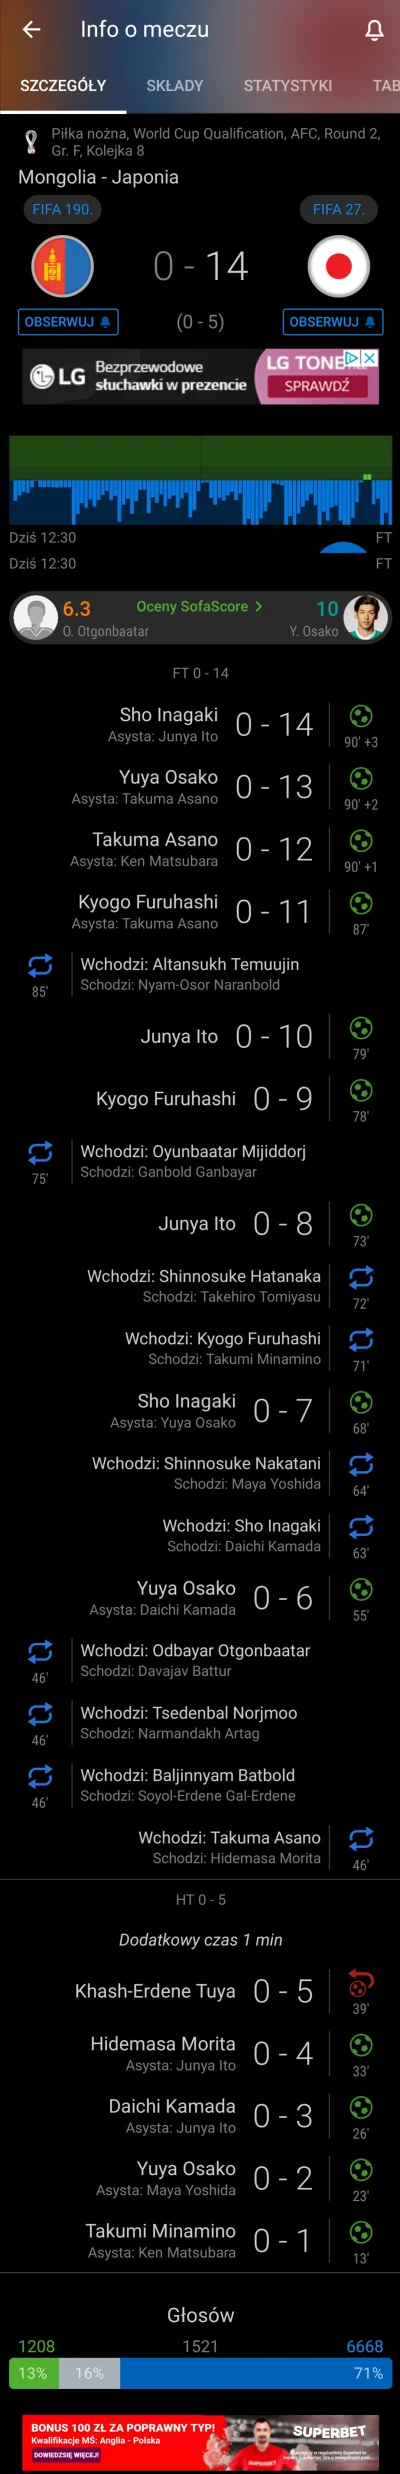 Jimothy - Tymczasem w Japonii
#mecz #pilkanozna